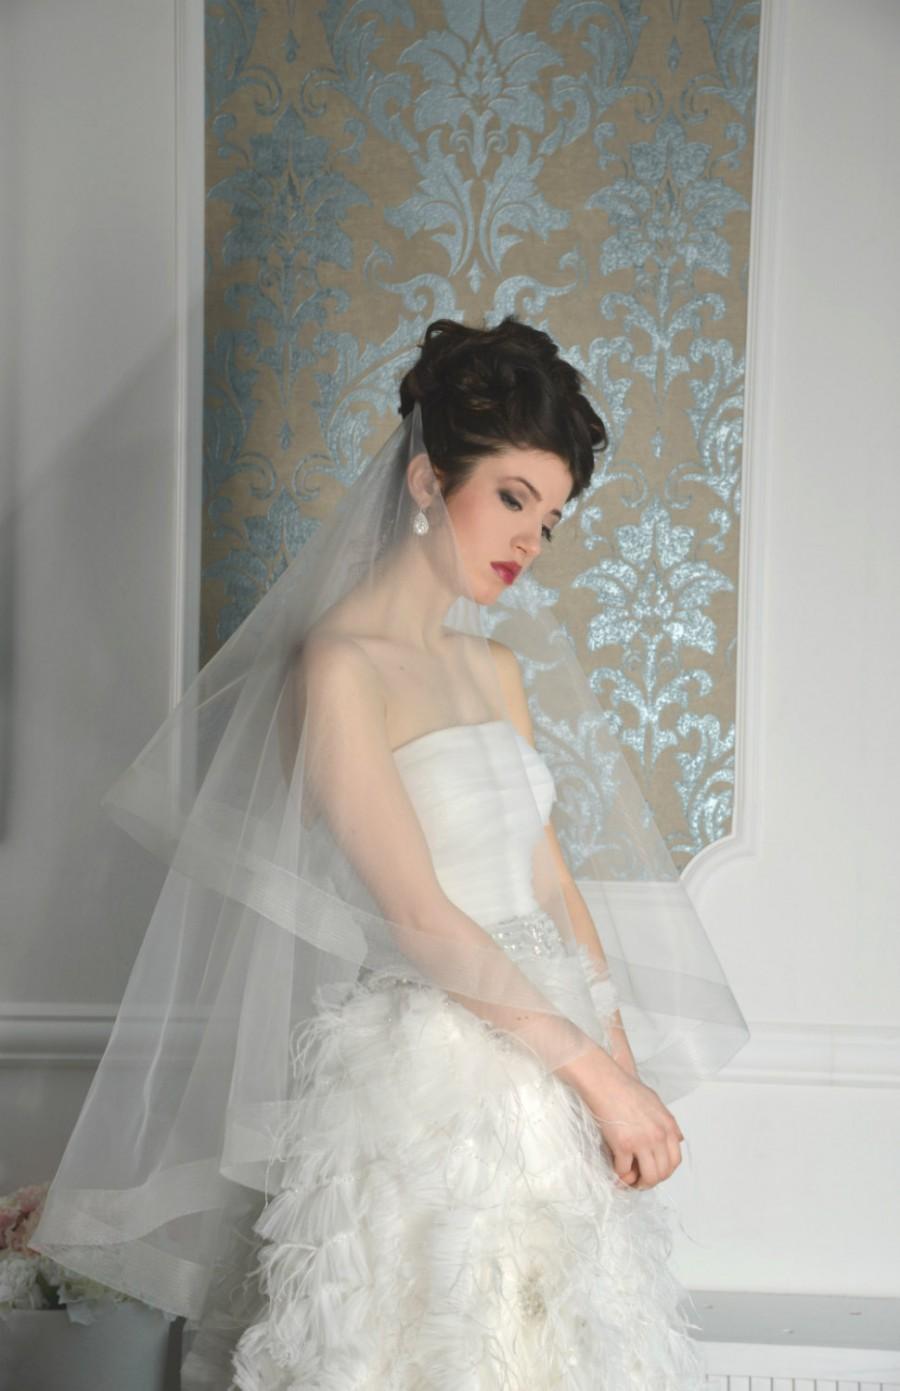 زفاف - horsehair drop double tier wedding veil Style 01607V,Blusher Veil, Tulle Two Layer with Horsehair Trim, Unique Veil